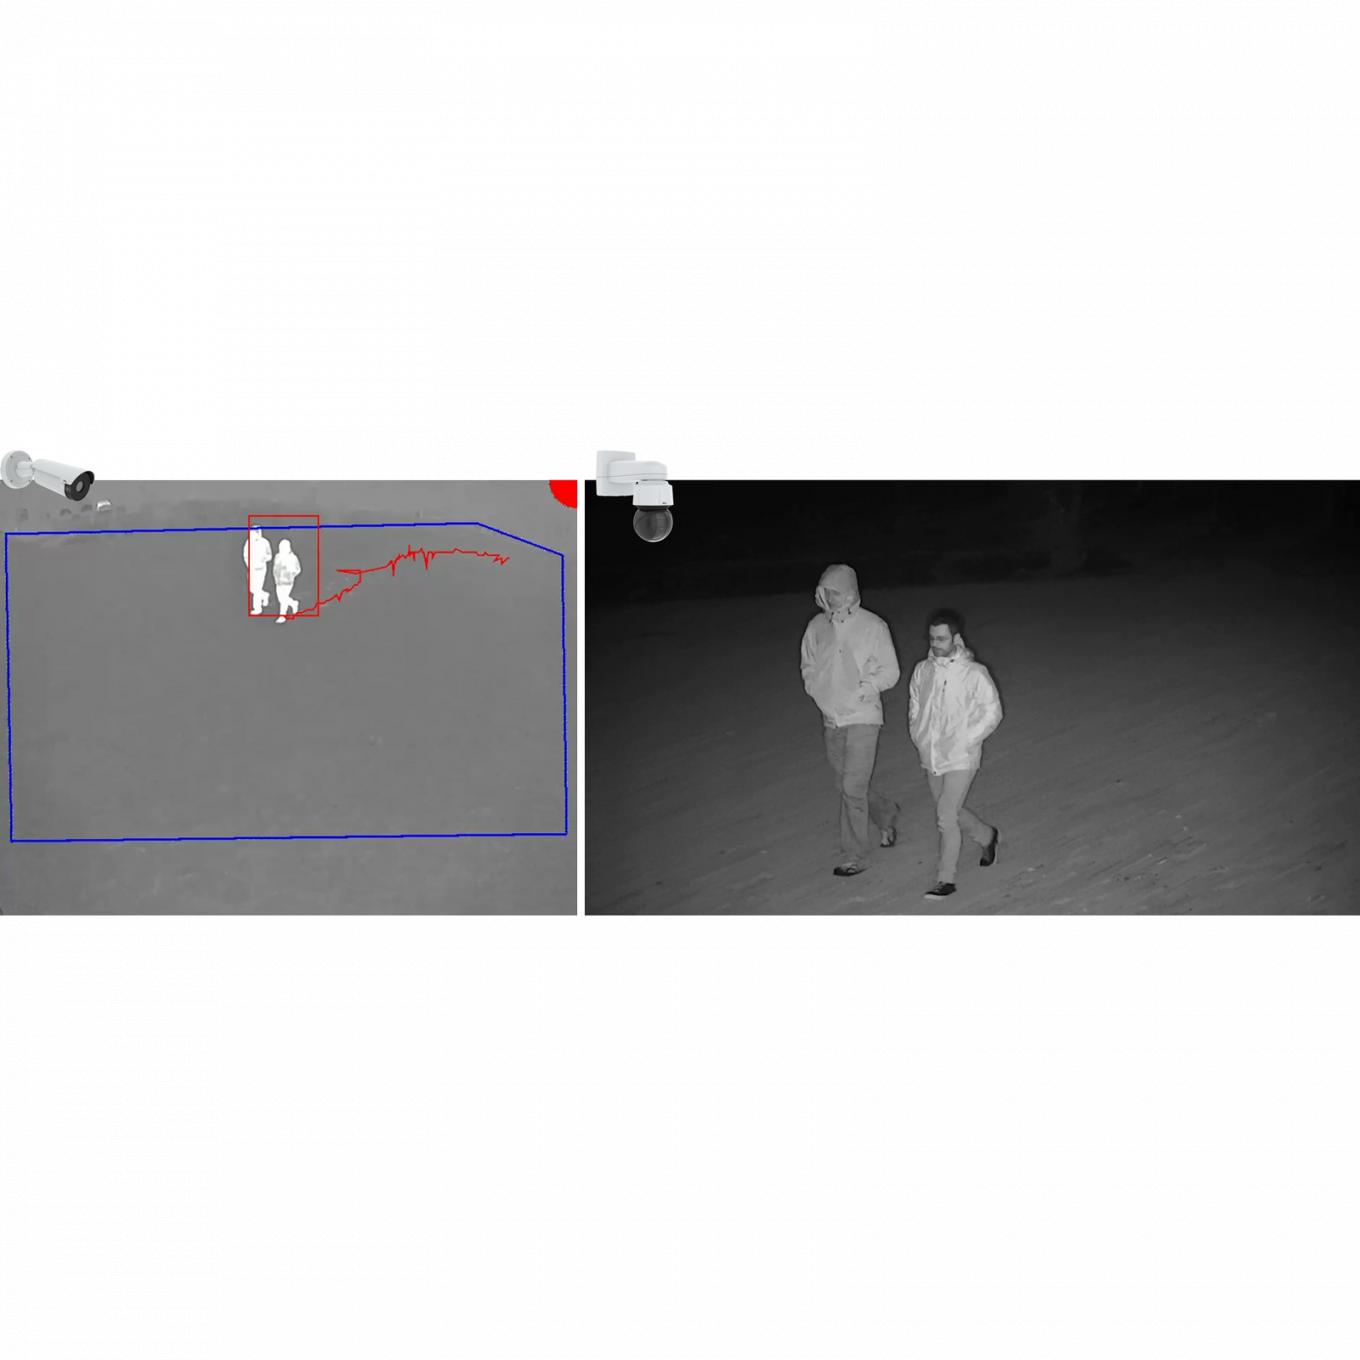 AXIS Perimeter Defender PTZ Autotracking, fotografía en blanco y negro de dos hombres caminando